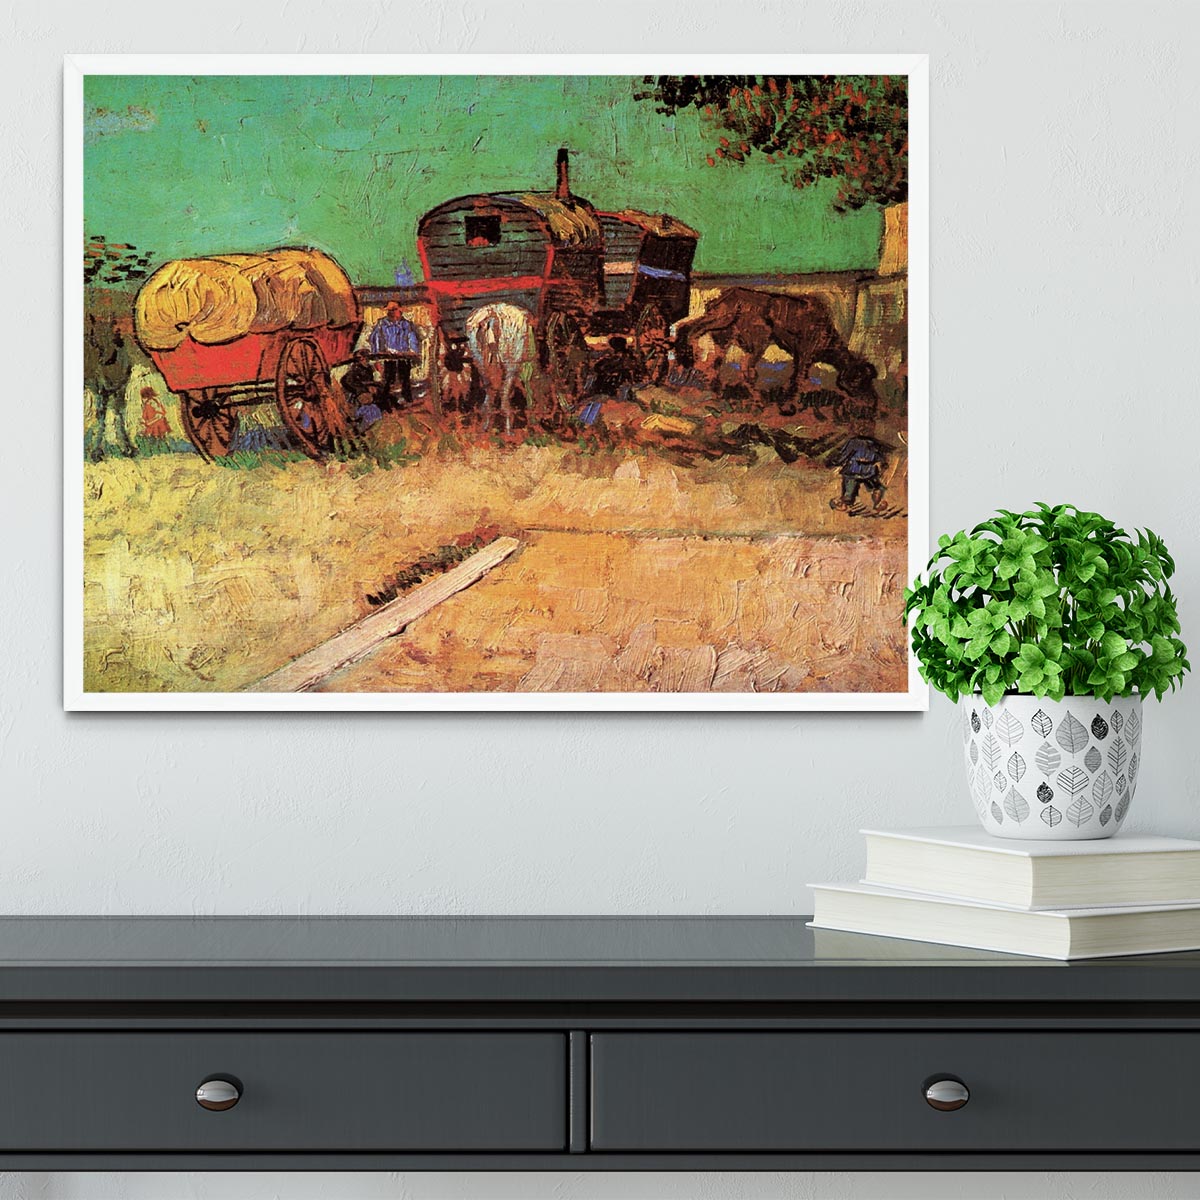 Encampment of Gypsies with Caravans by Van Gogh Framed Print - Canvas Art Rocks -6